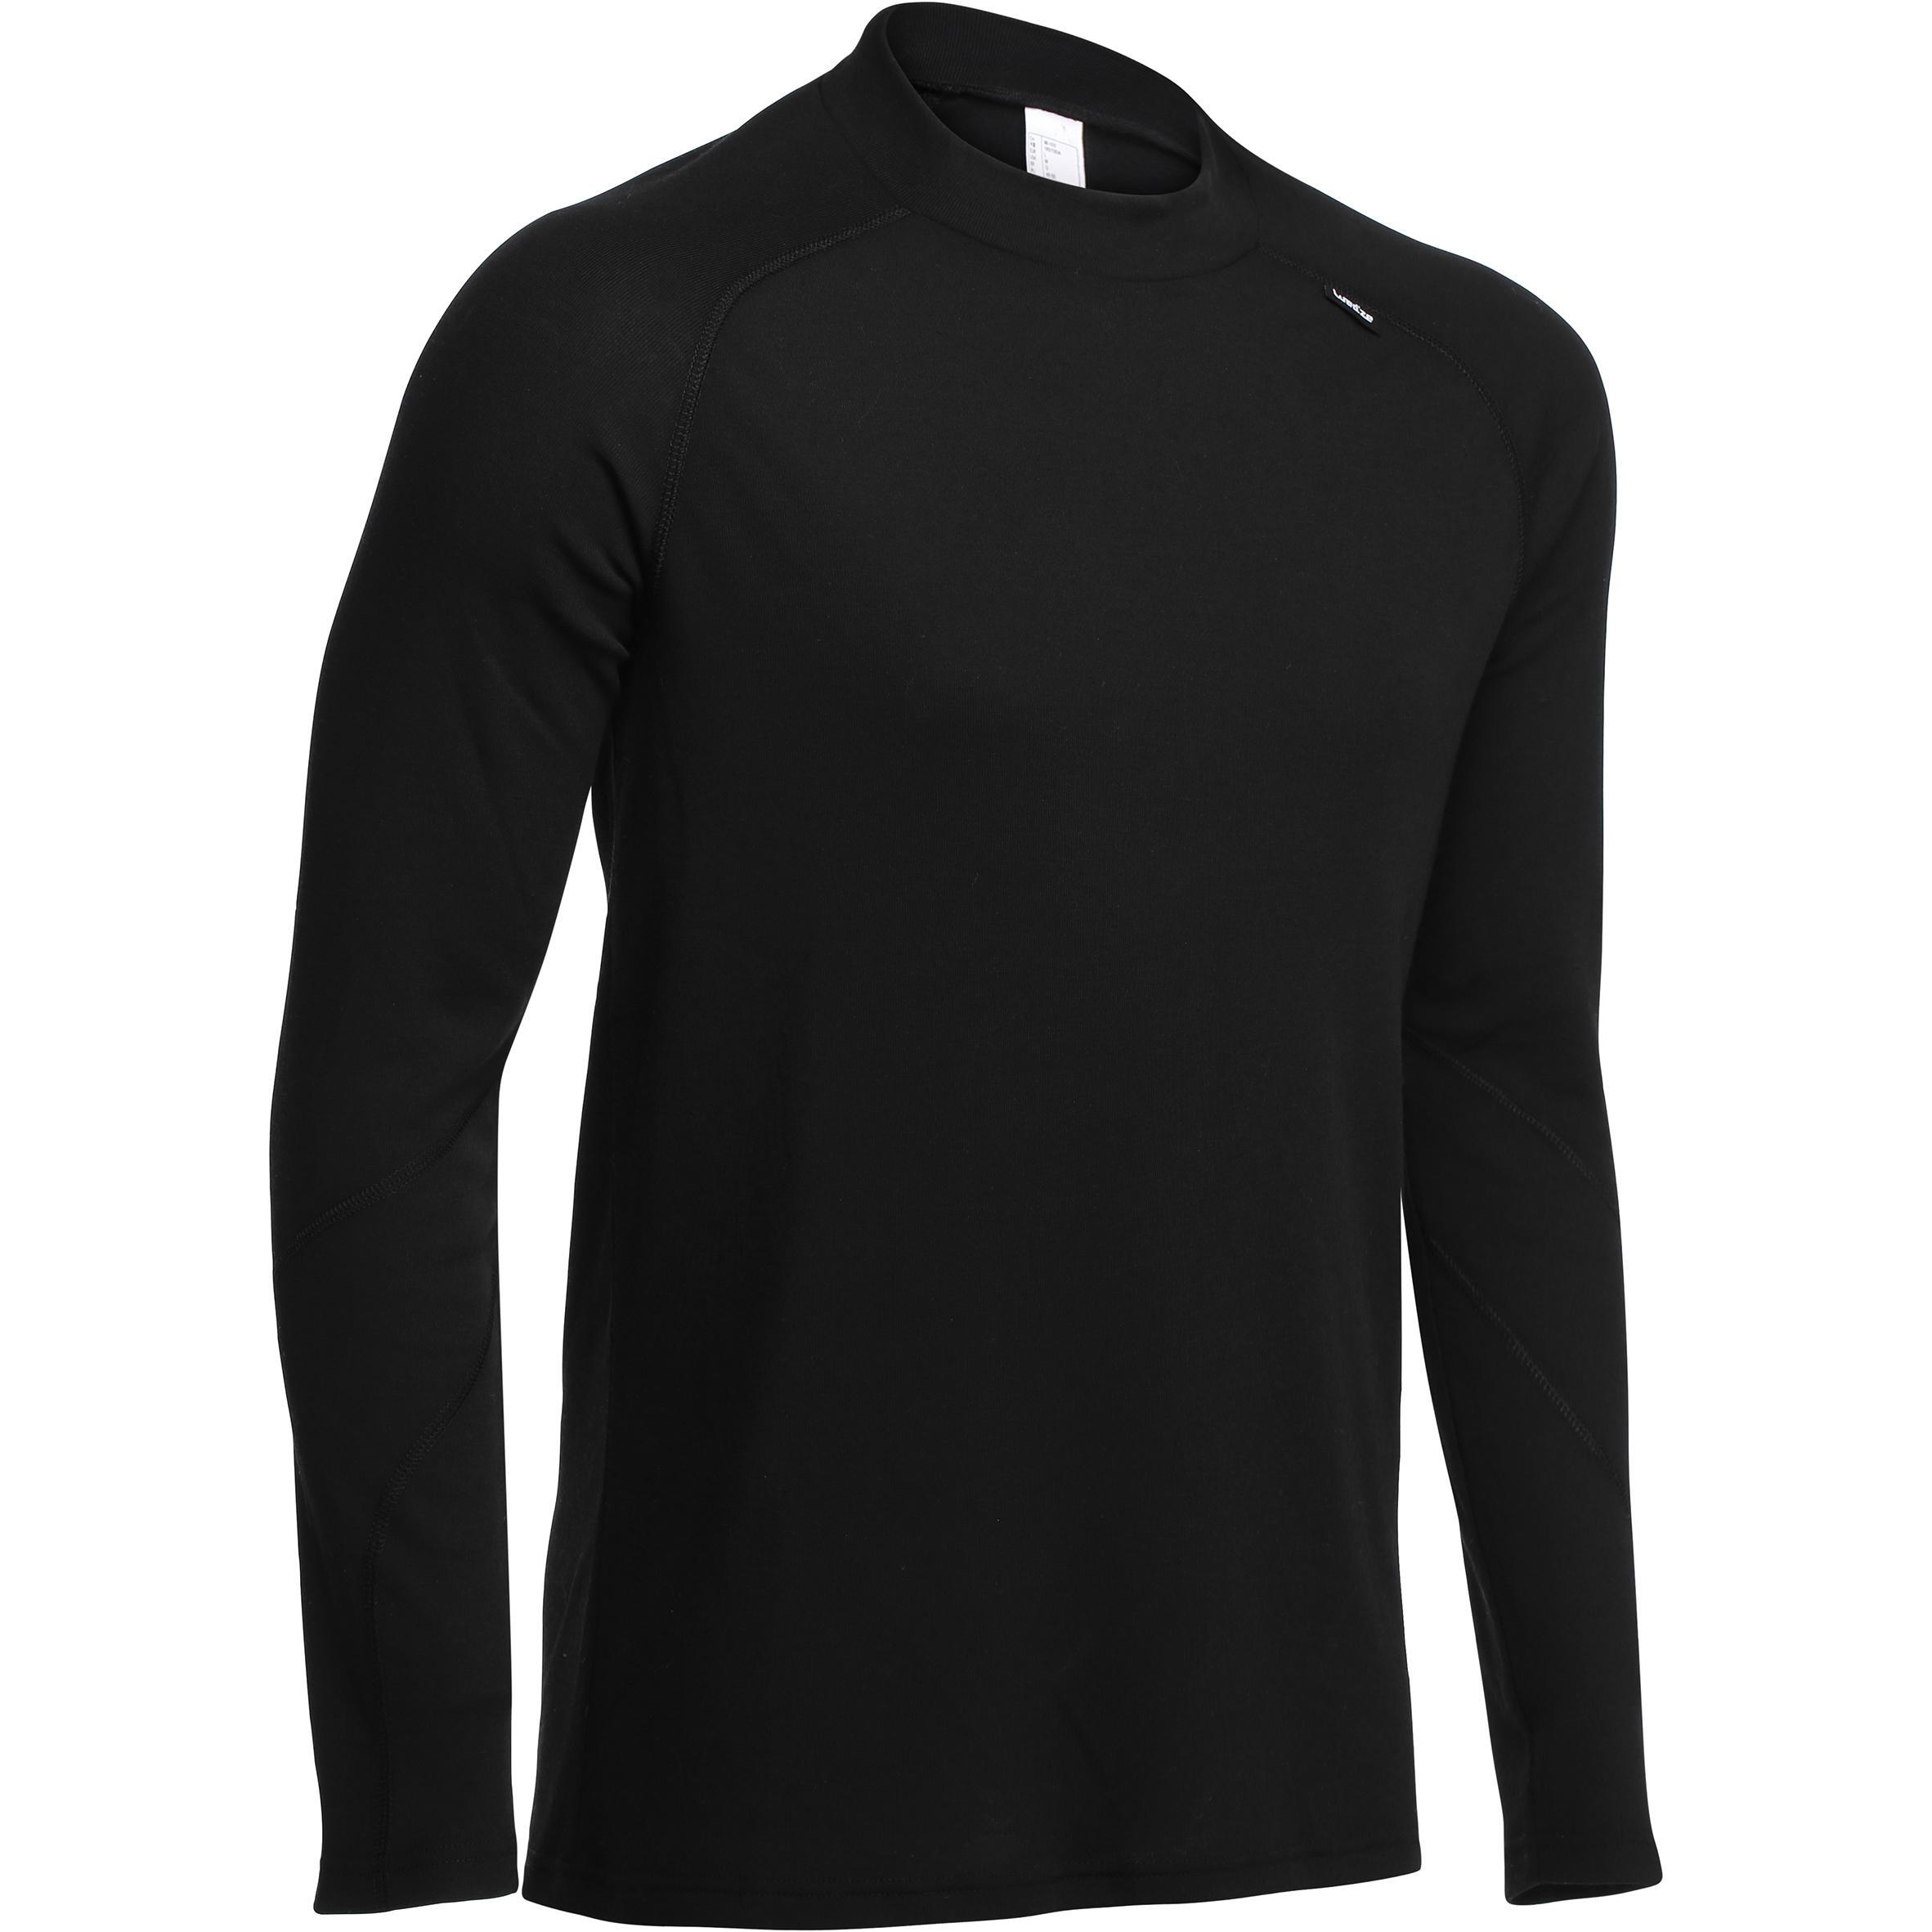 [ด่วน!! โปรโมชั่นมีจำนวนจำกัด] เสื้อตัวในเพื่อการเล่นสกีสำหรับผู้ชาย SIMPLE WARM (สีดำ) สำหรับ สกี สโนว์บอร์ด